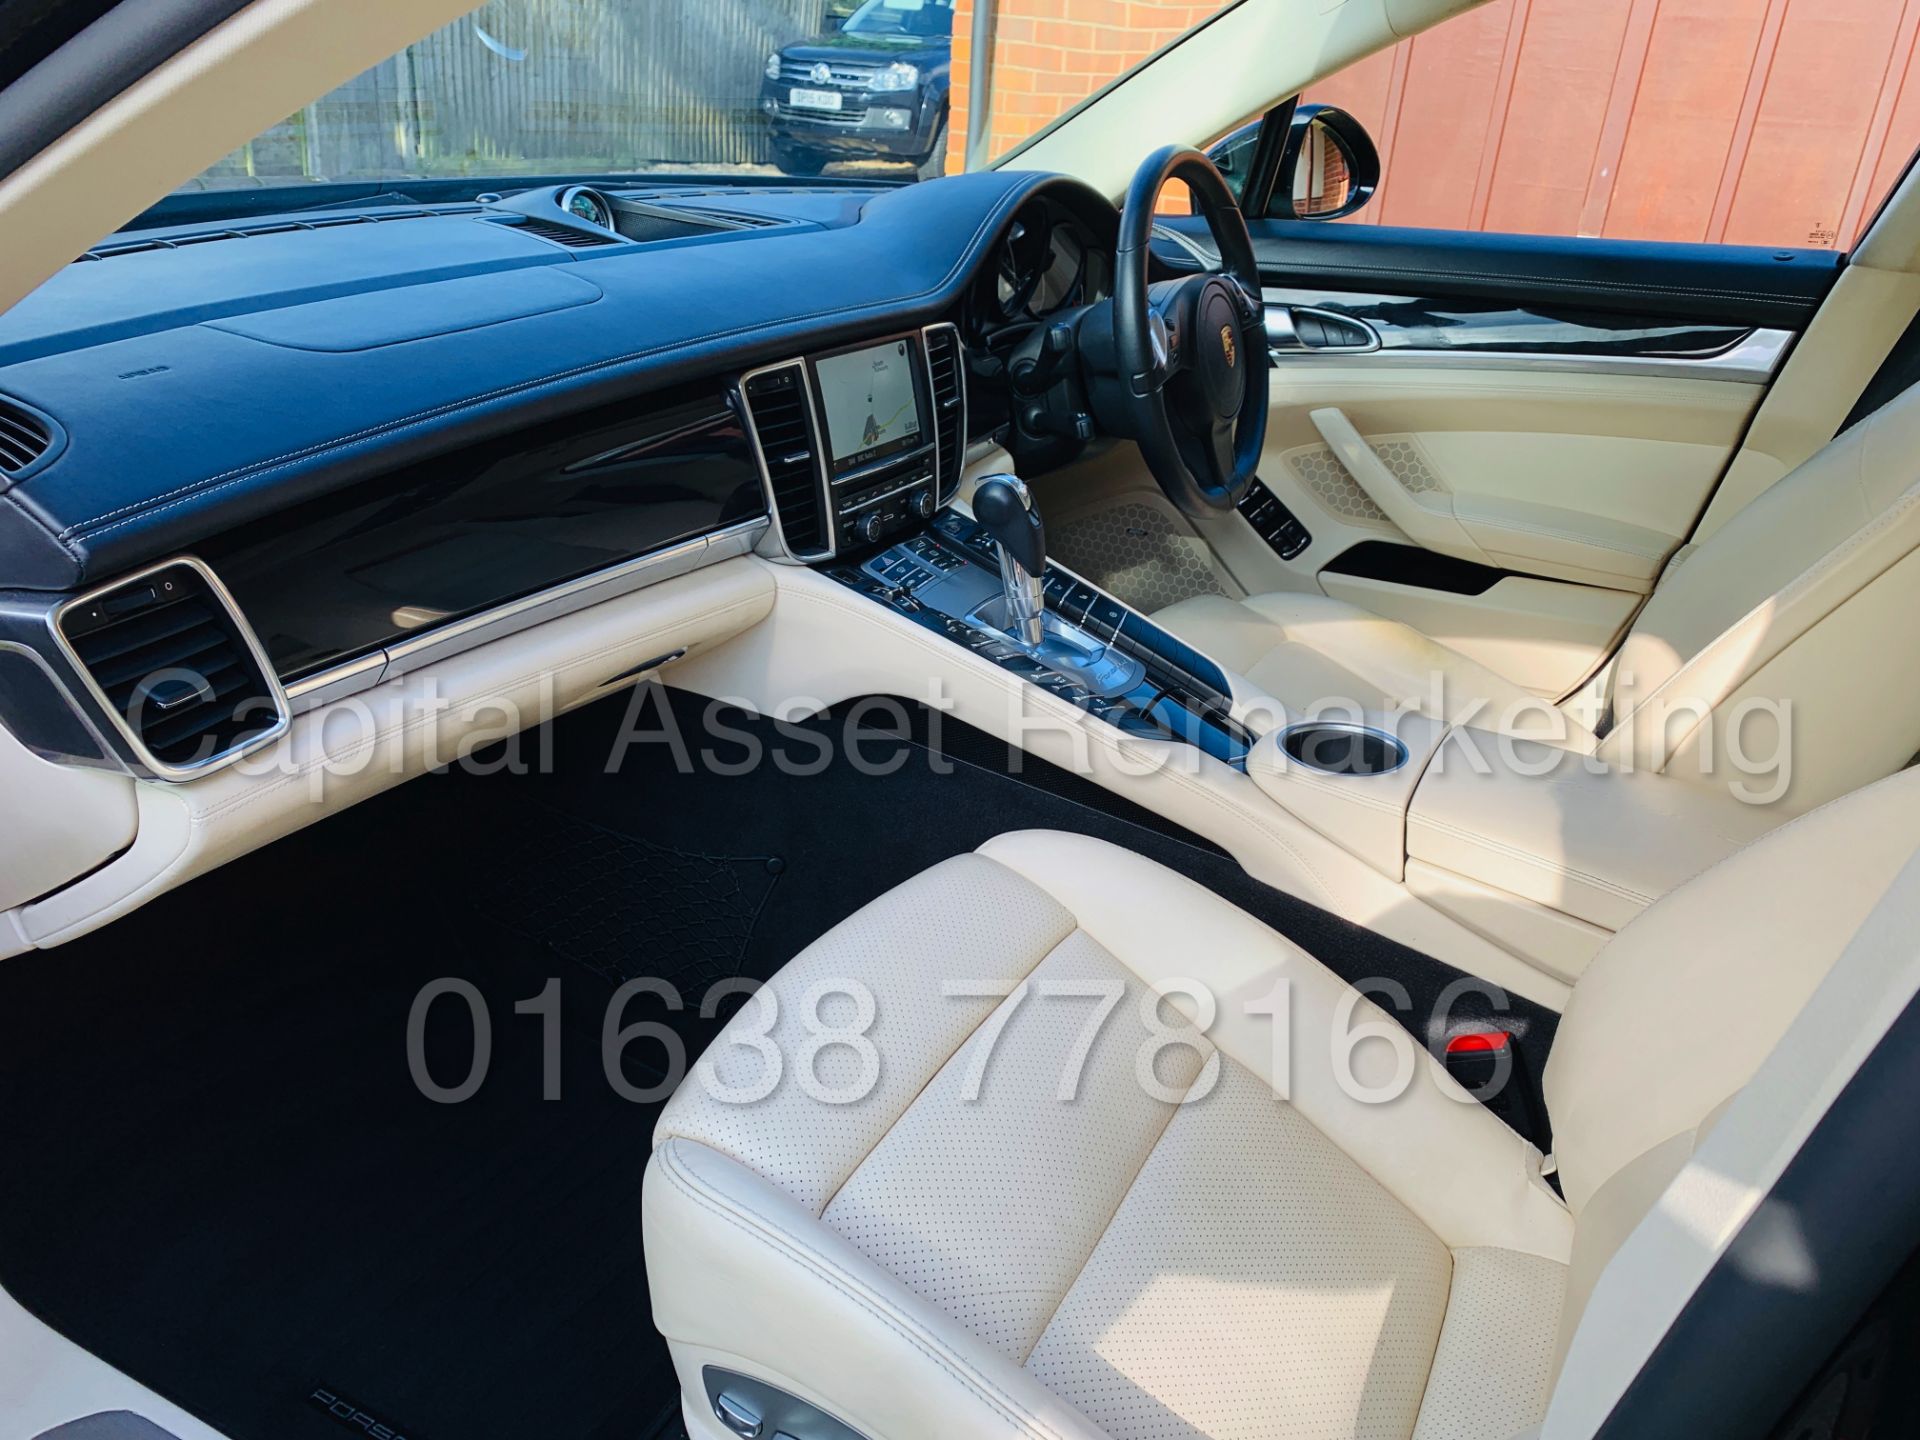 PORSCHE PANAMERA *LUXURY 4 DOOR SALOON* (2016 MODEL) '3.0 V6 DIESEL-300 BHP-8 SPEED AUTO (HUGE SPEC) - Image 26 of 70